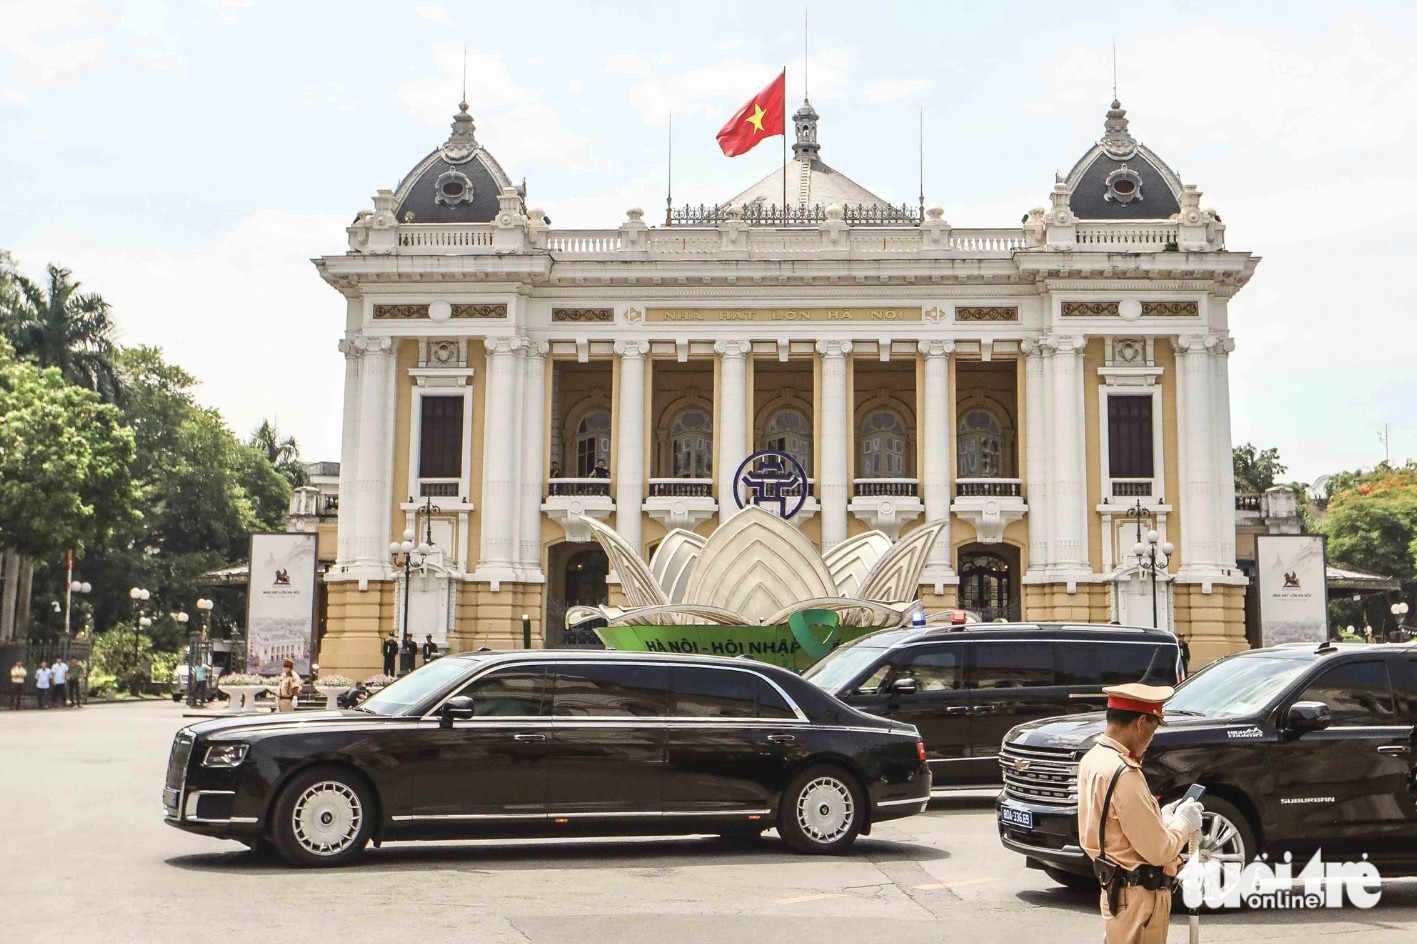 Ngắm siêu xe đặc chủng phục vụ Tổng thống Nga Putin trên đường phố Hà Nội